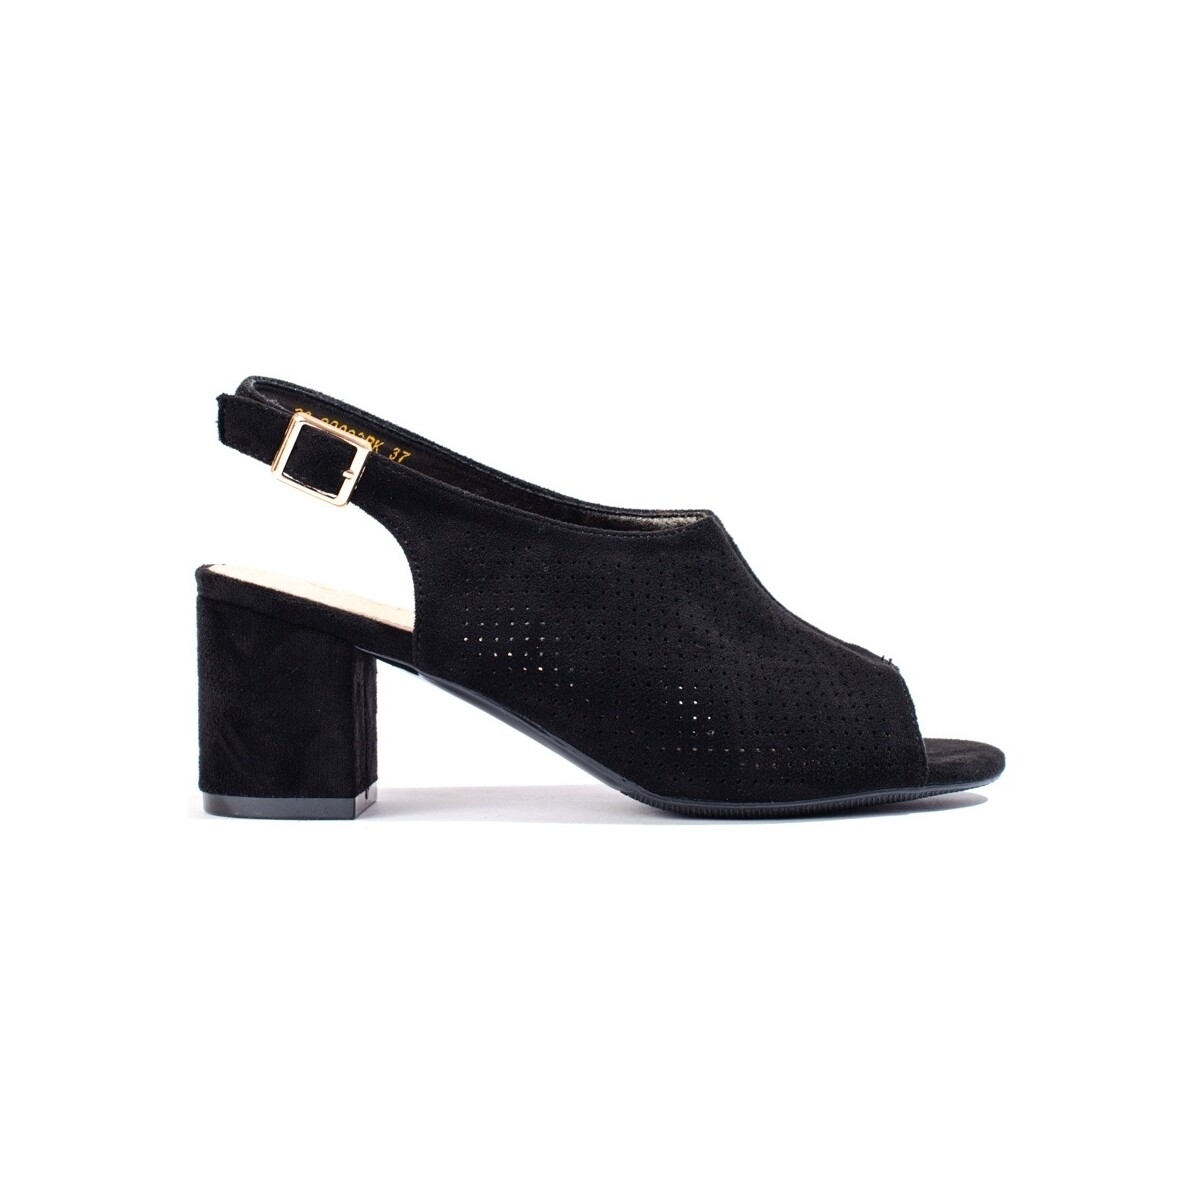 Boty Ženy Sandály W. Potocki Pěkné  sandály dámské černé na širokém podpatku 